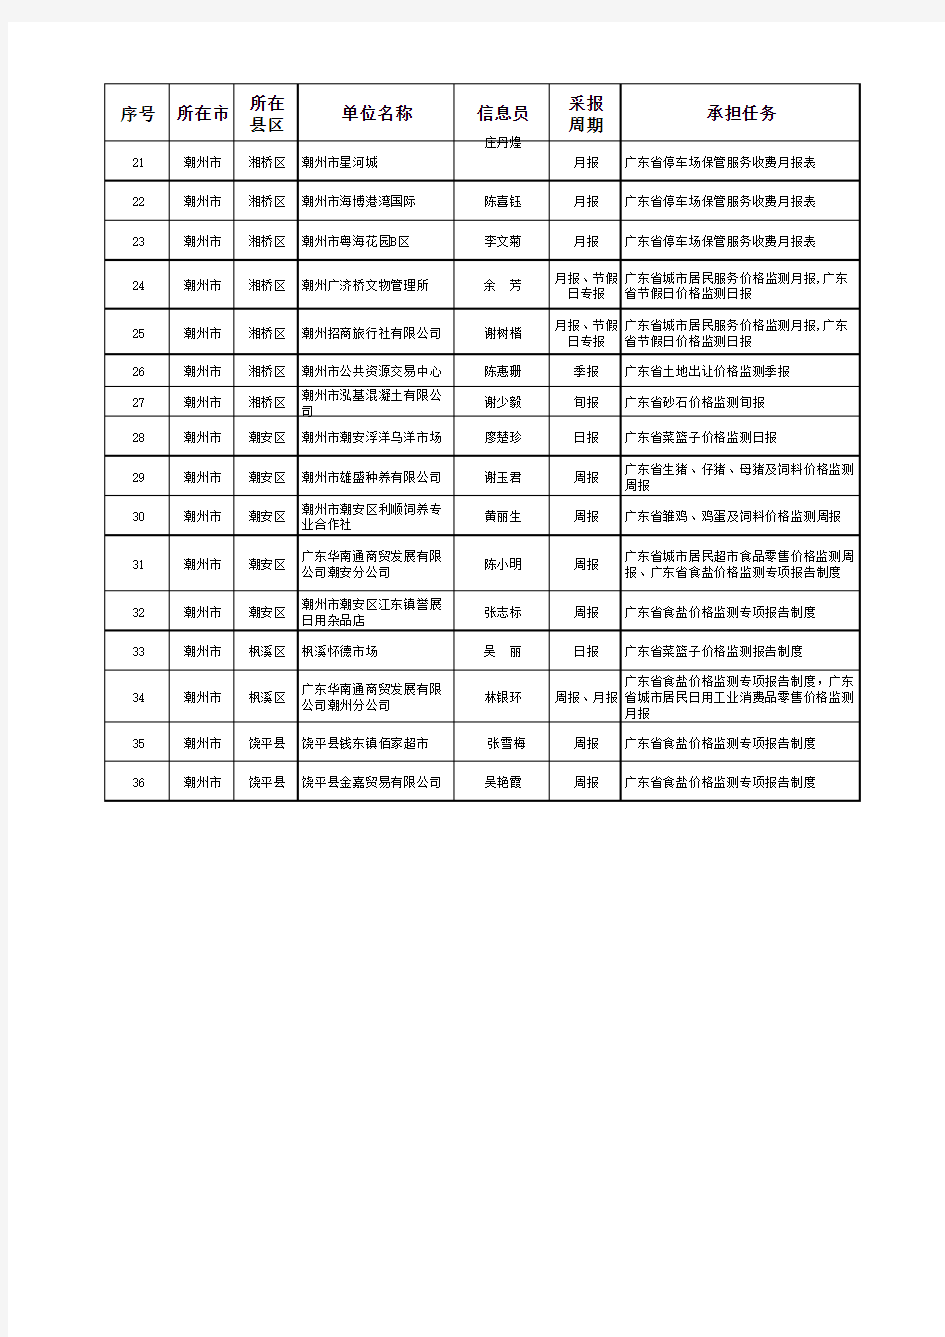 潮州市2019年价格监测定点单位及信息员情况表